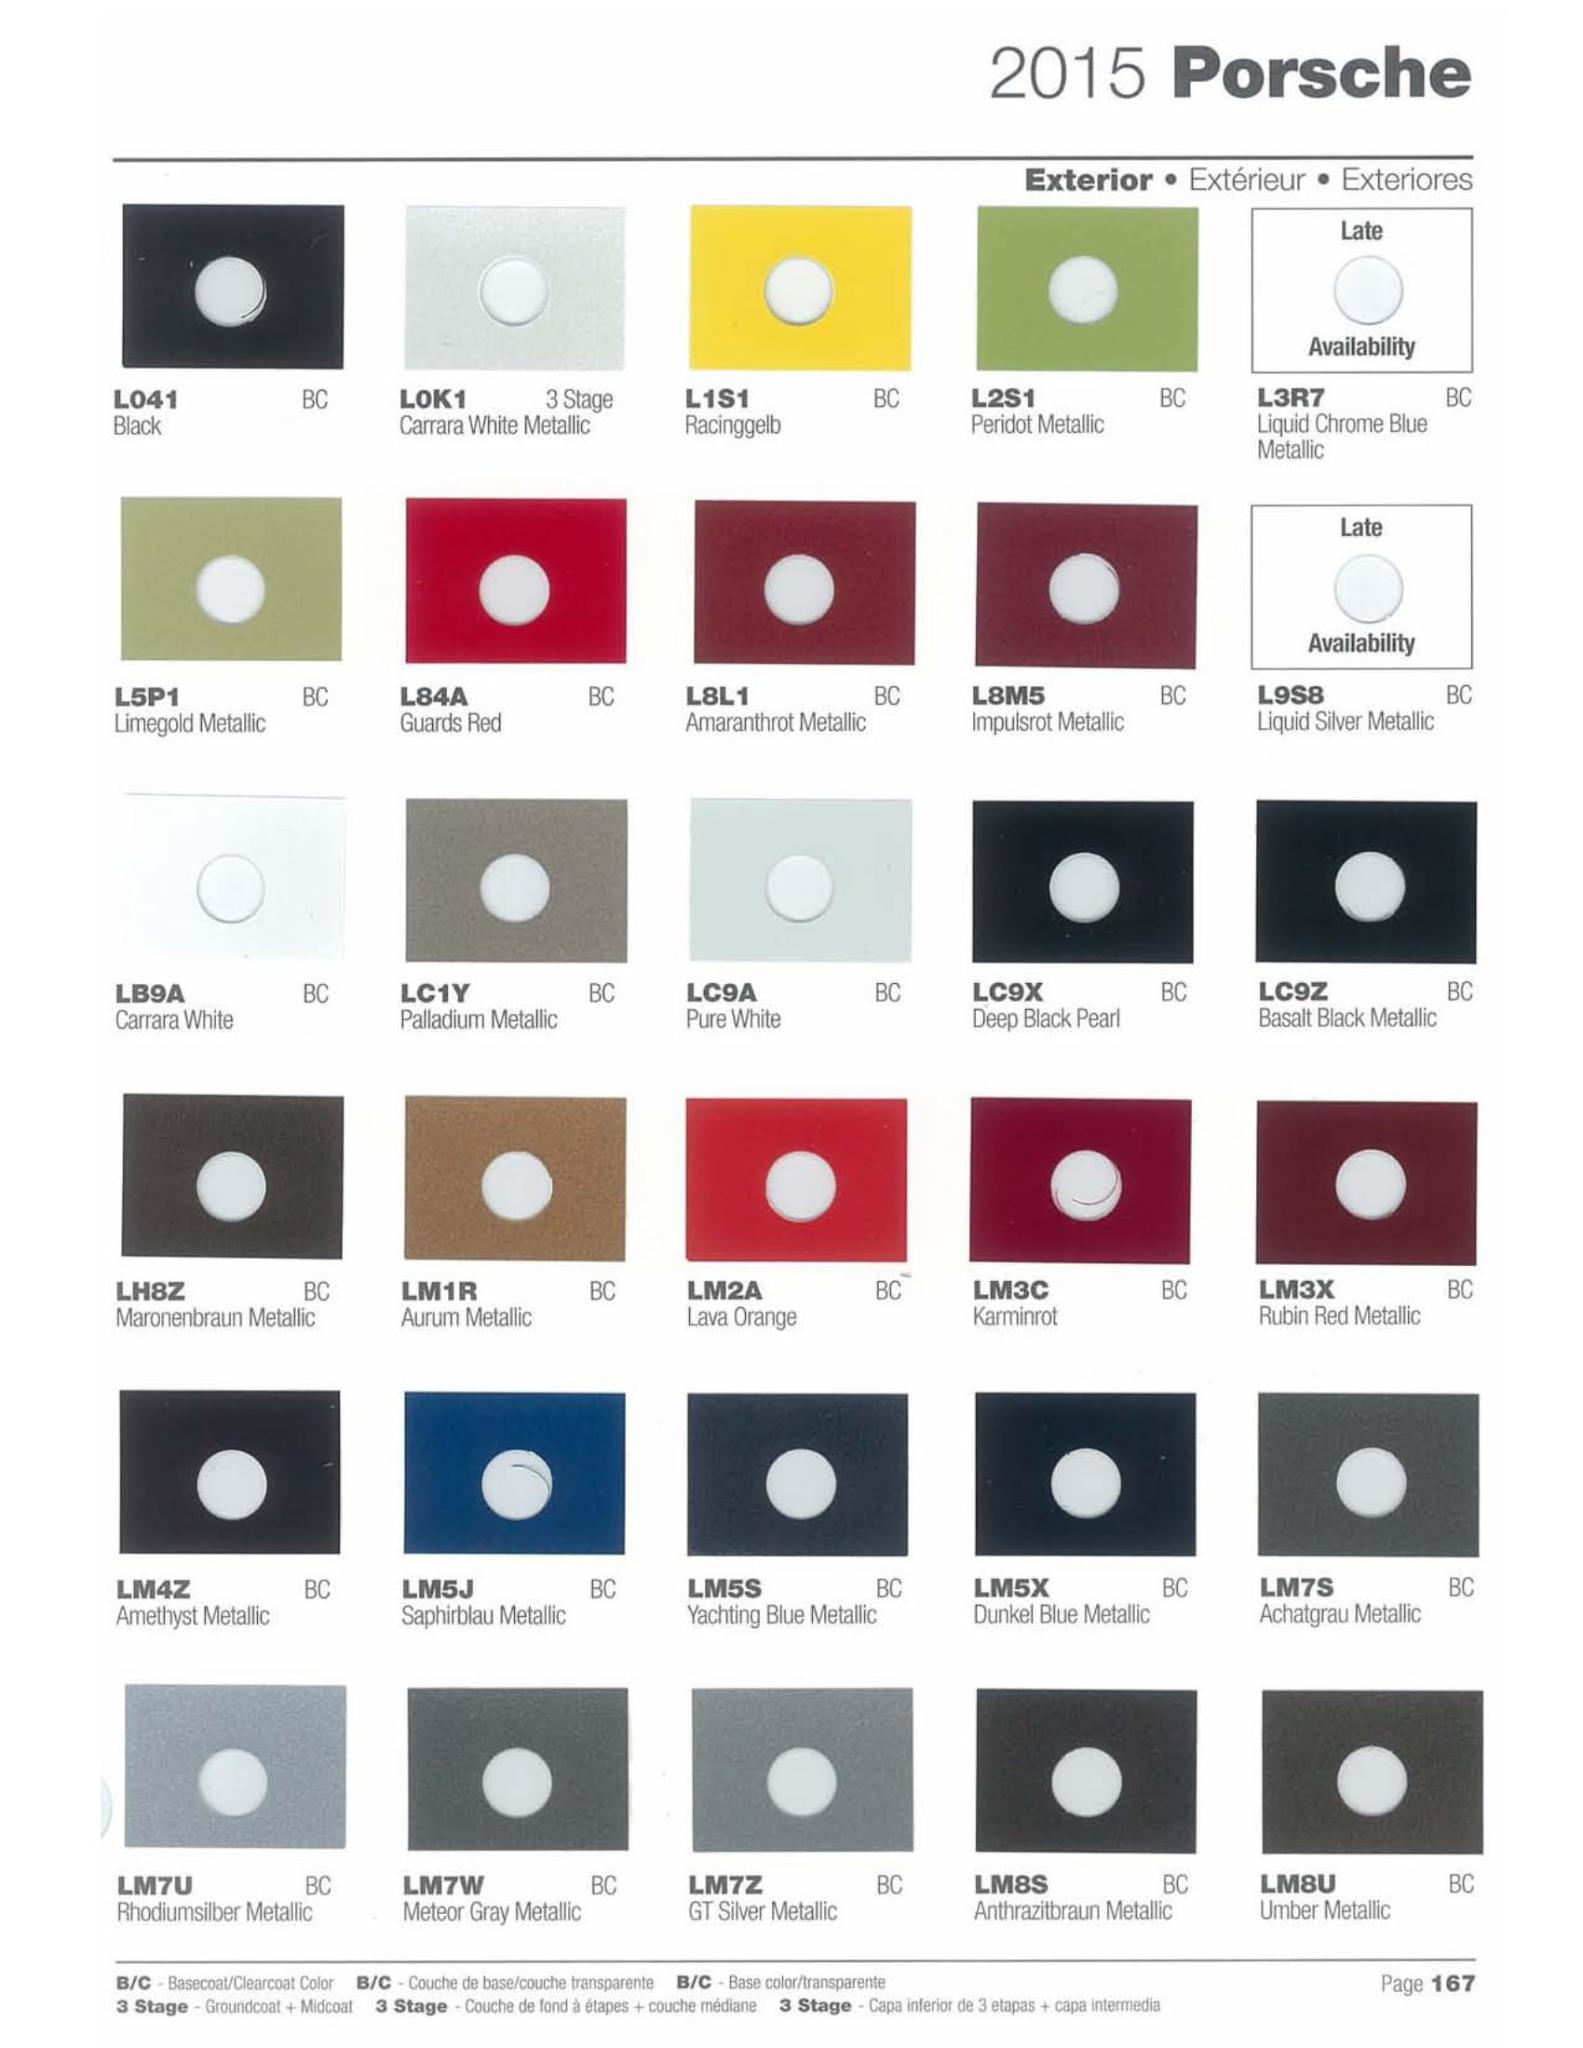 Porsche Exterior Paint Codes and Color Chart